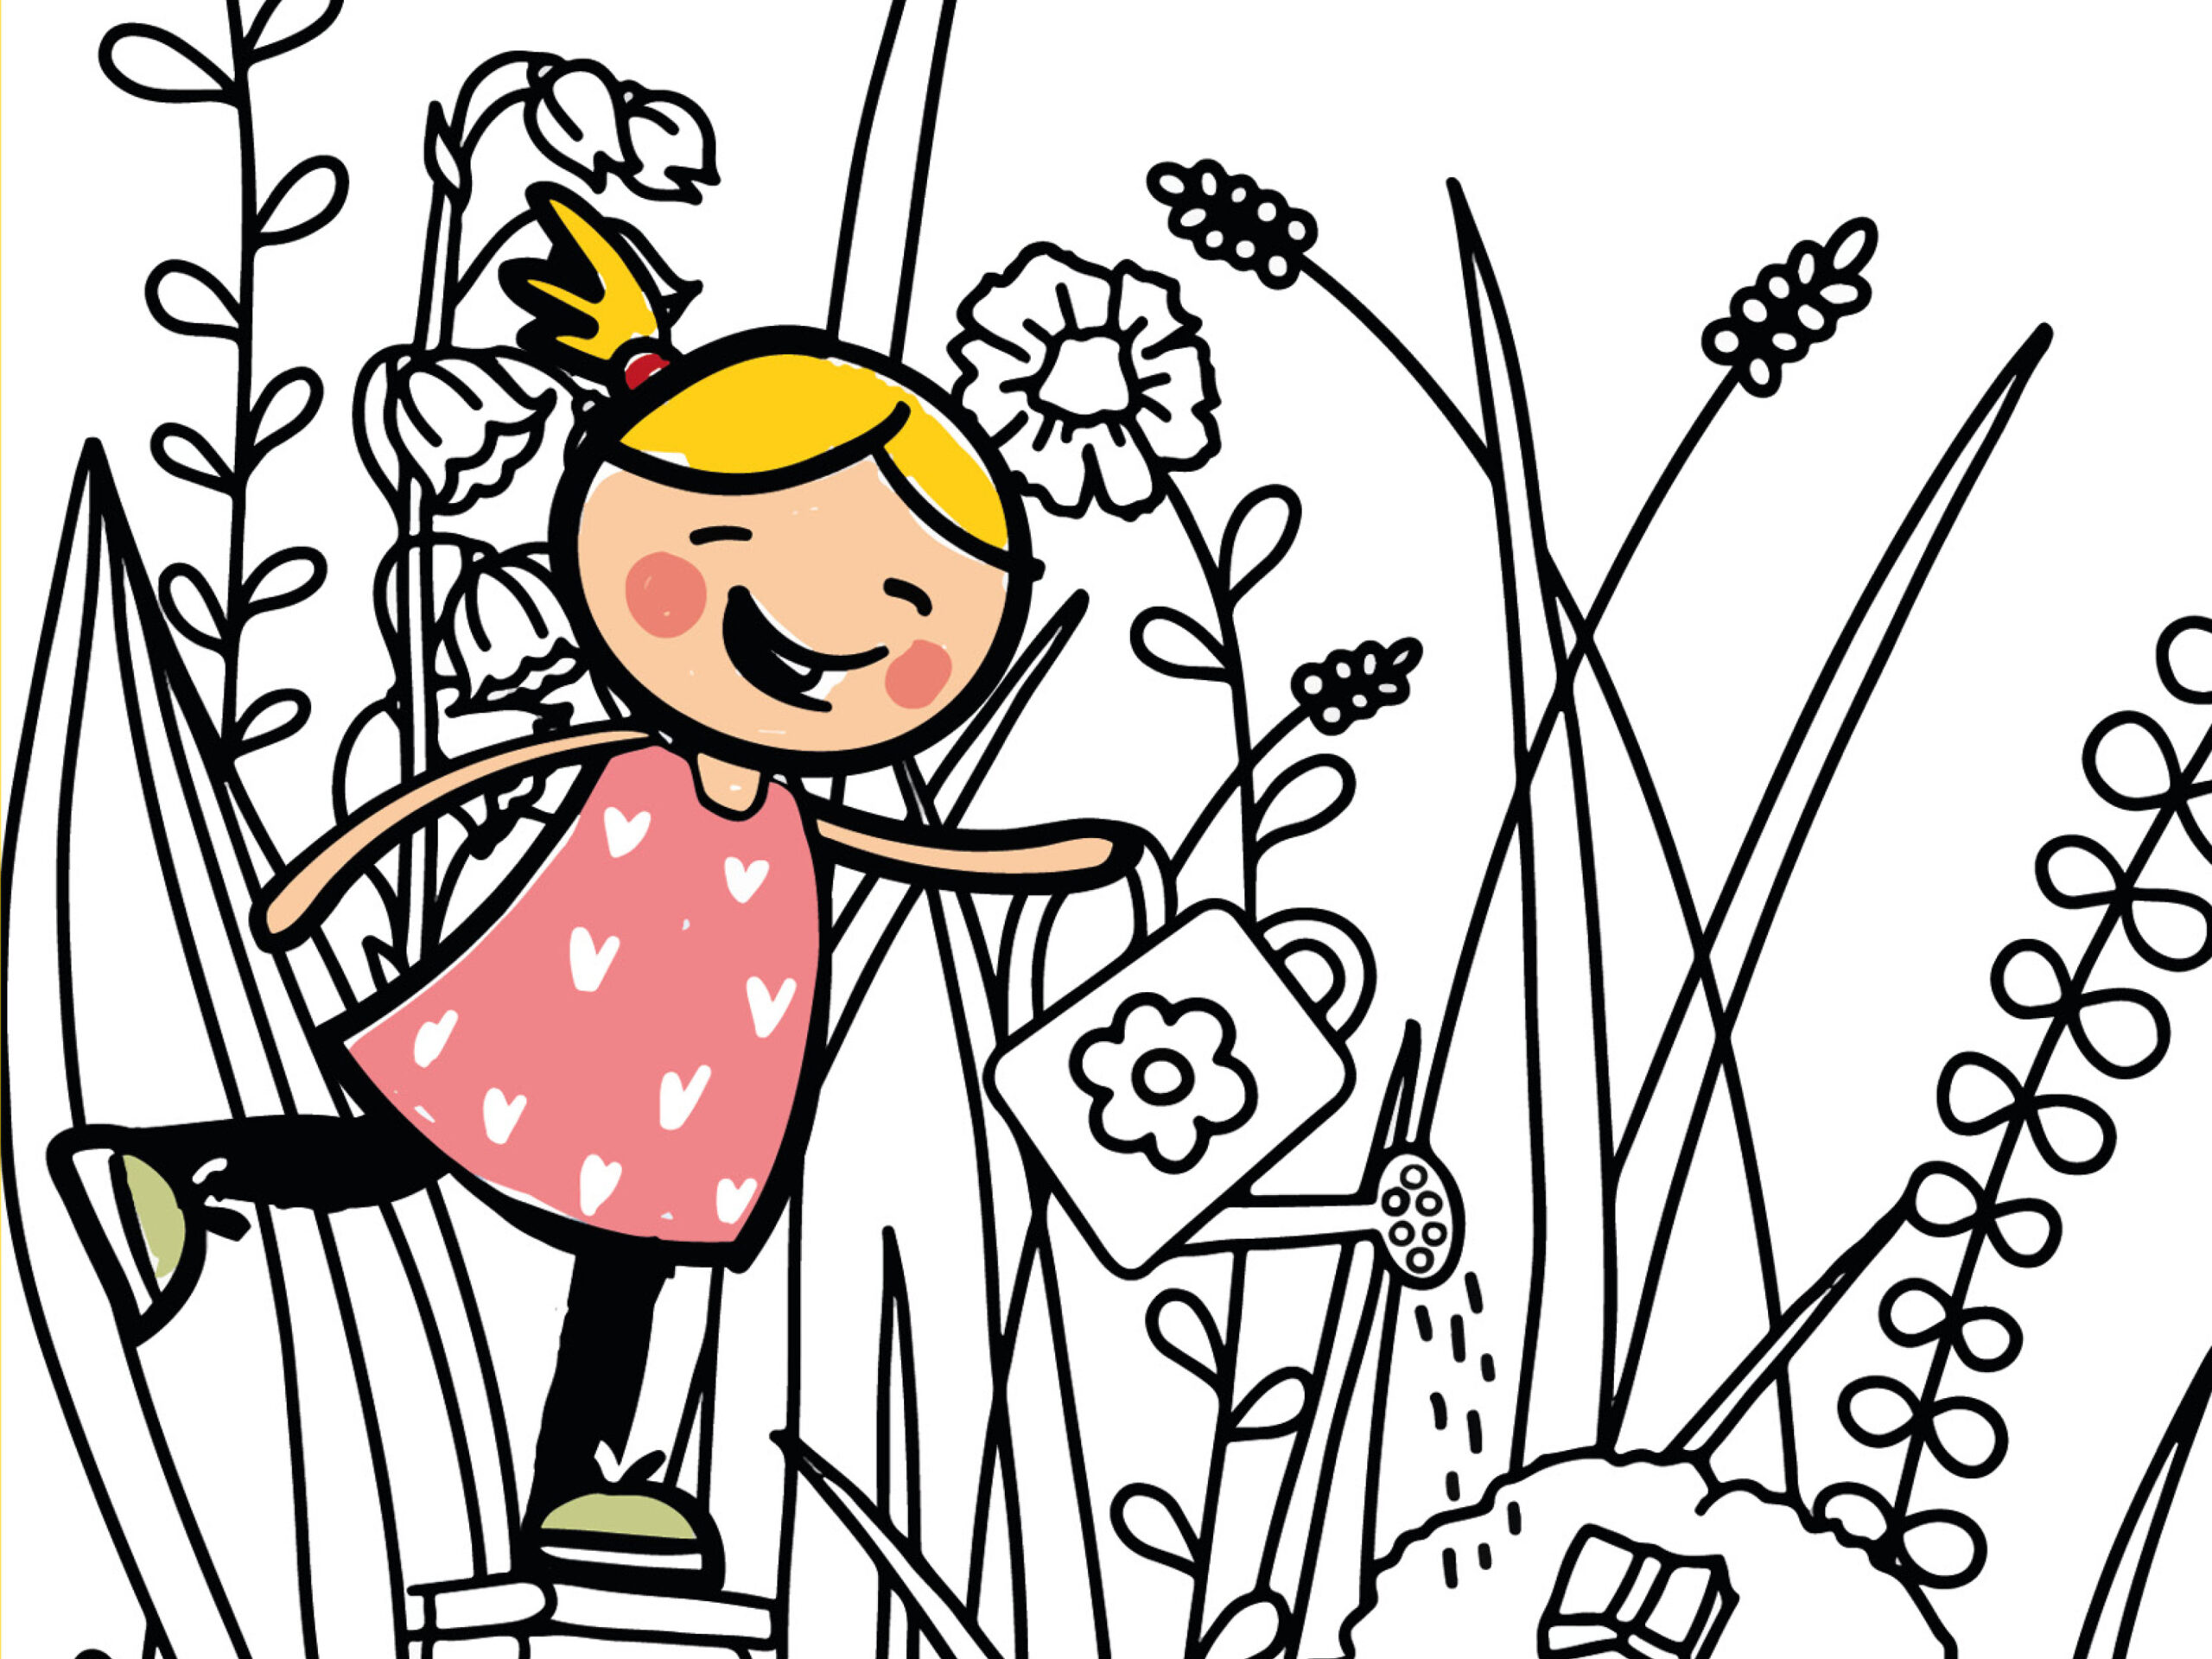 Illustration eines blonden Mädchens, die in einem Garten herumläuft und mit Gießkanne die Blumen gießt